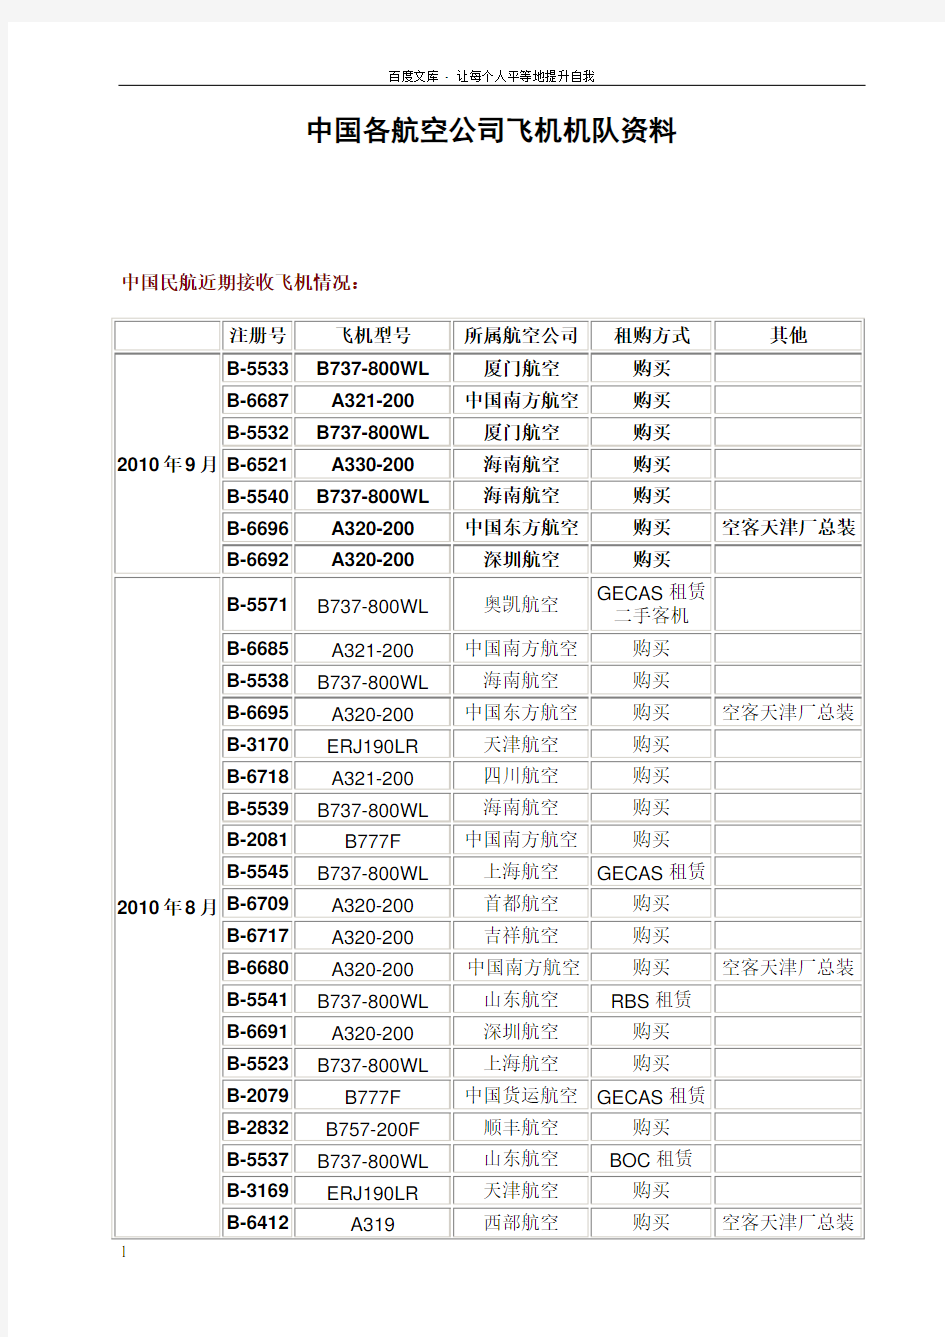 中国各航空公司飞机机队资料